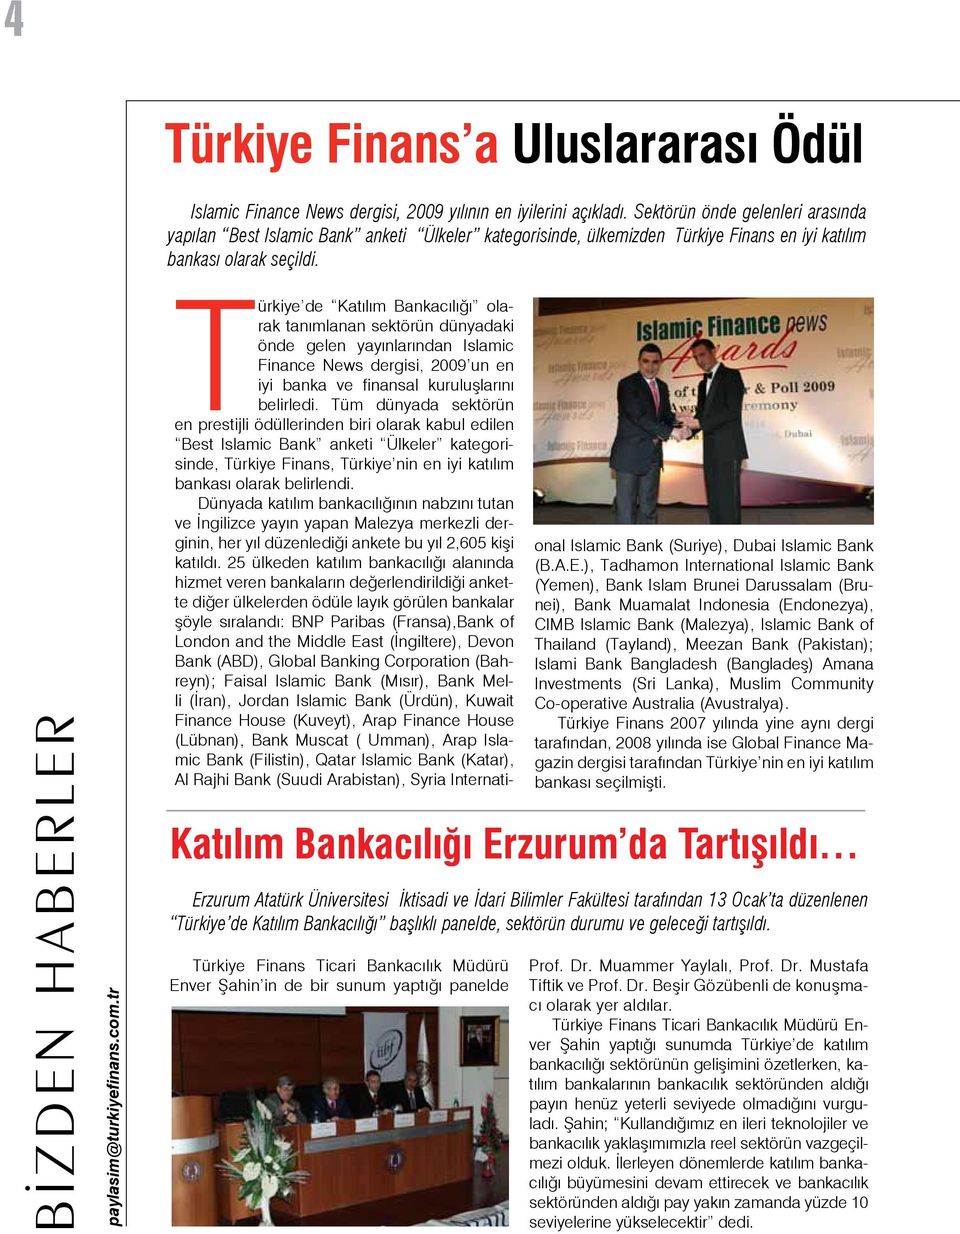 tr Türkiye Finans Ticari Bankacılık Müdürü Enver Şahin in de bir sunum yaptığı panelde Türkiye de Katılım Bankacılığı olarak tanımlanan sektörün dünyadaki önde gelen yayınlarından Islamic Finance